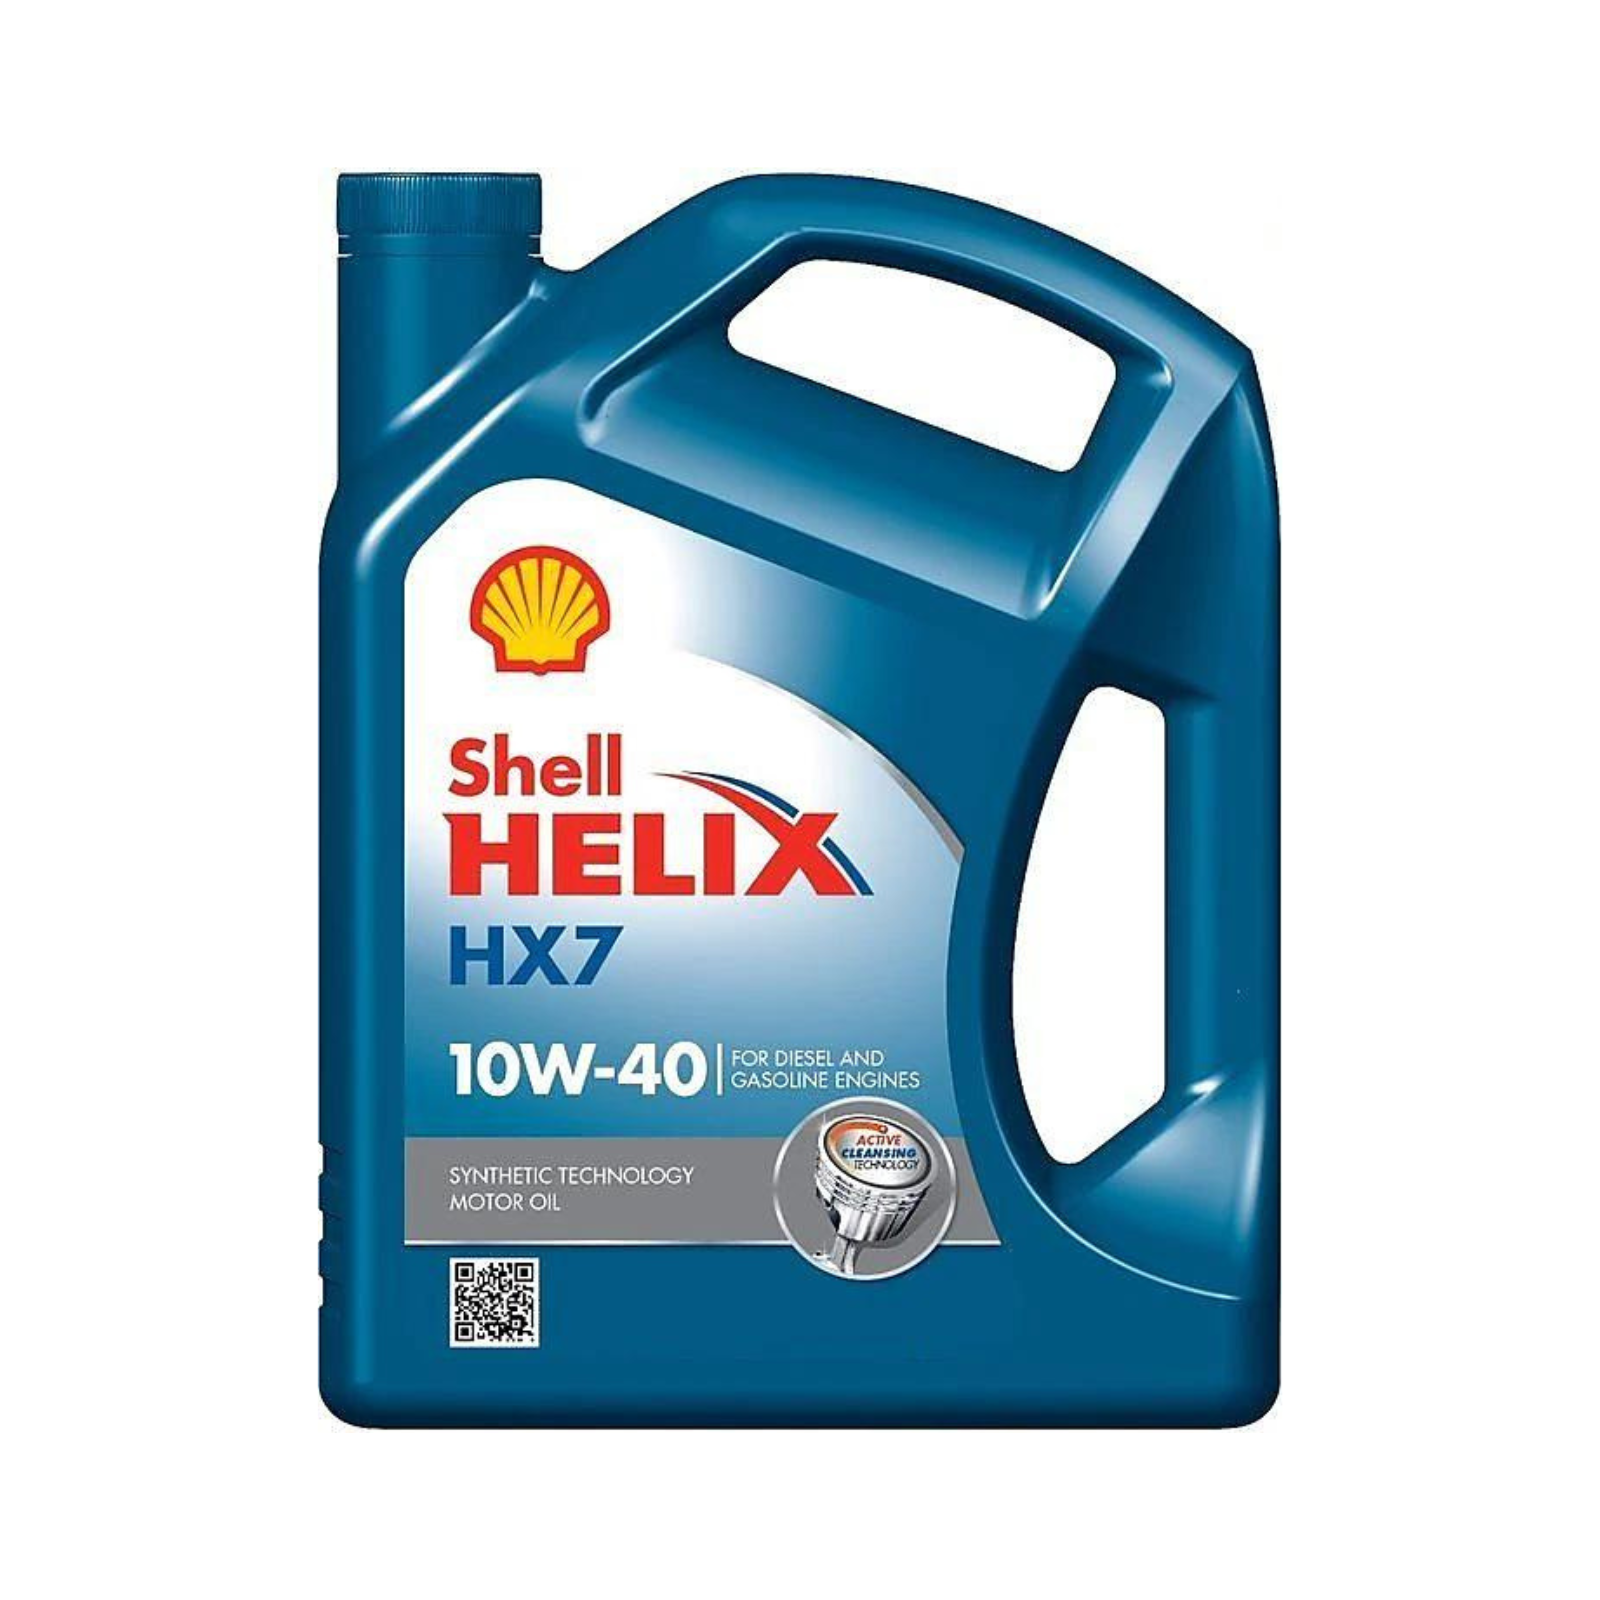 Shell Helix HX7 10W-40 5L Engine Oil